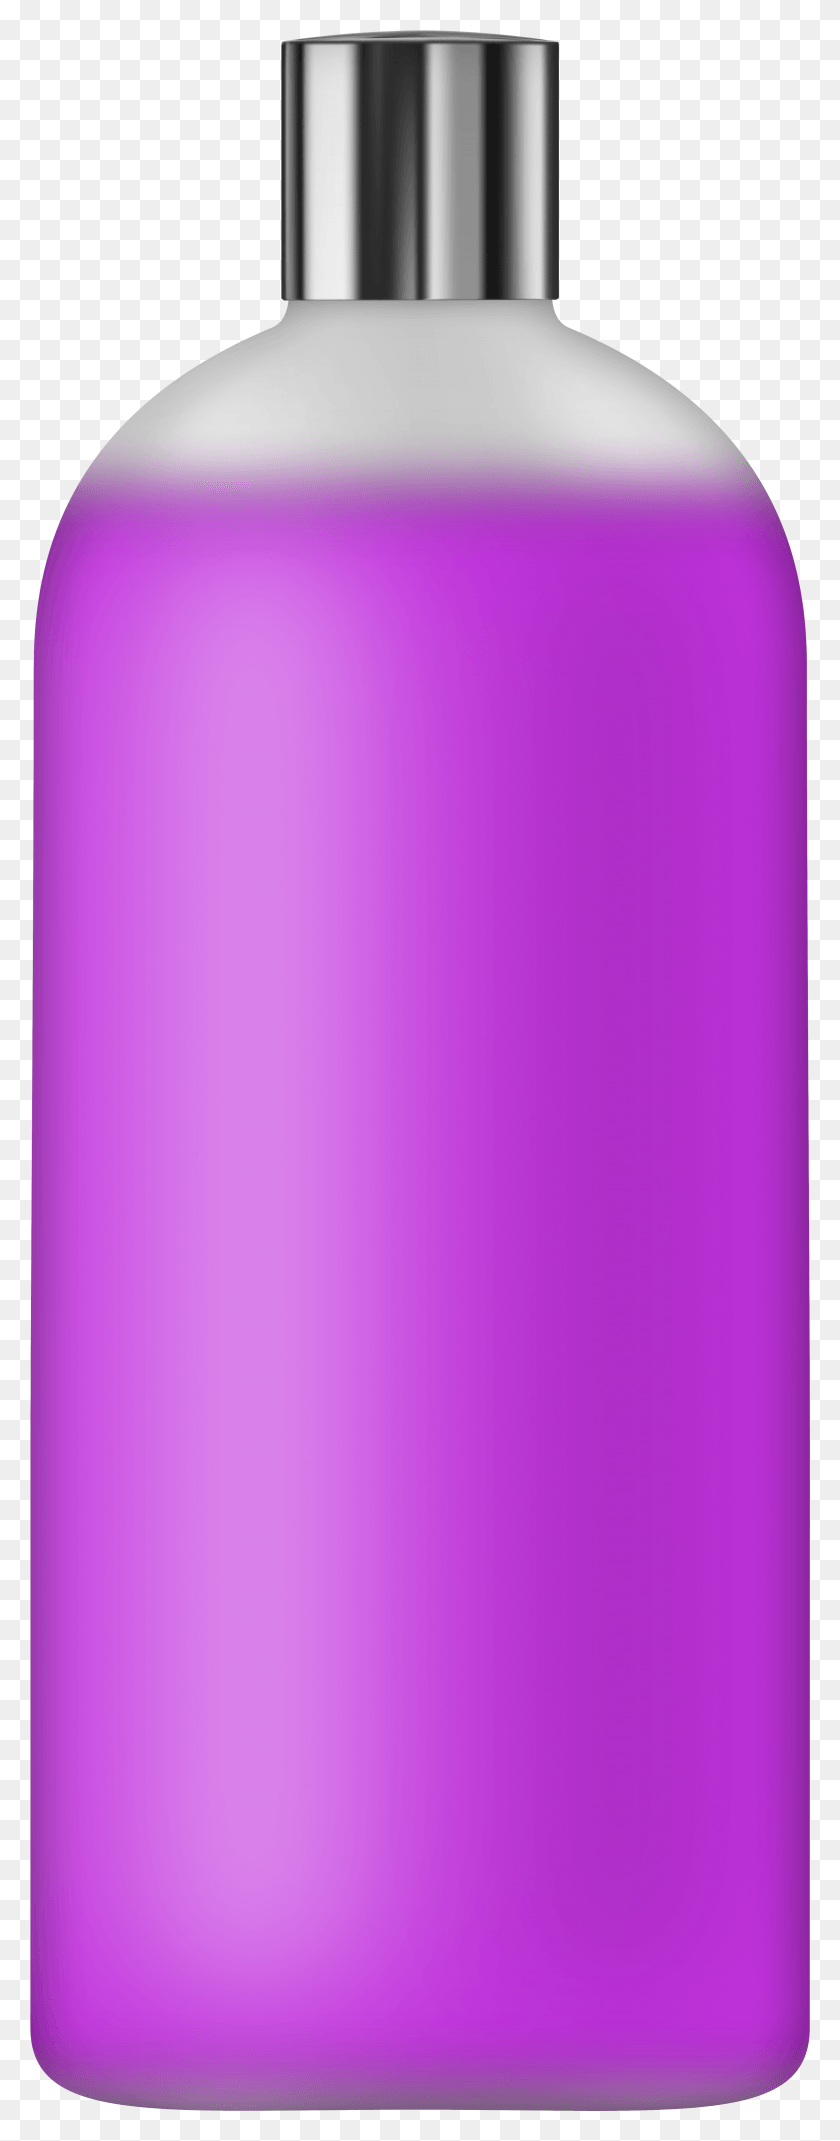 2970x7925 Жидкое Мыло Фиолетовый Картинки, Олово, Банка, Лампа Hd Png Скачать